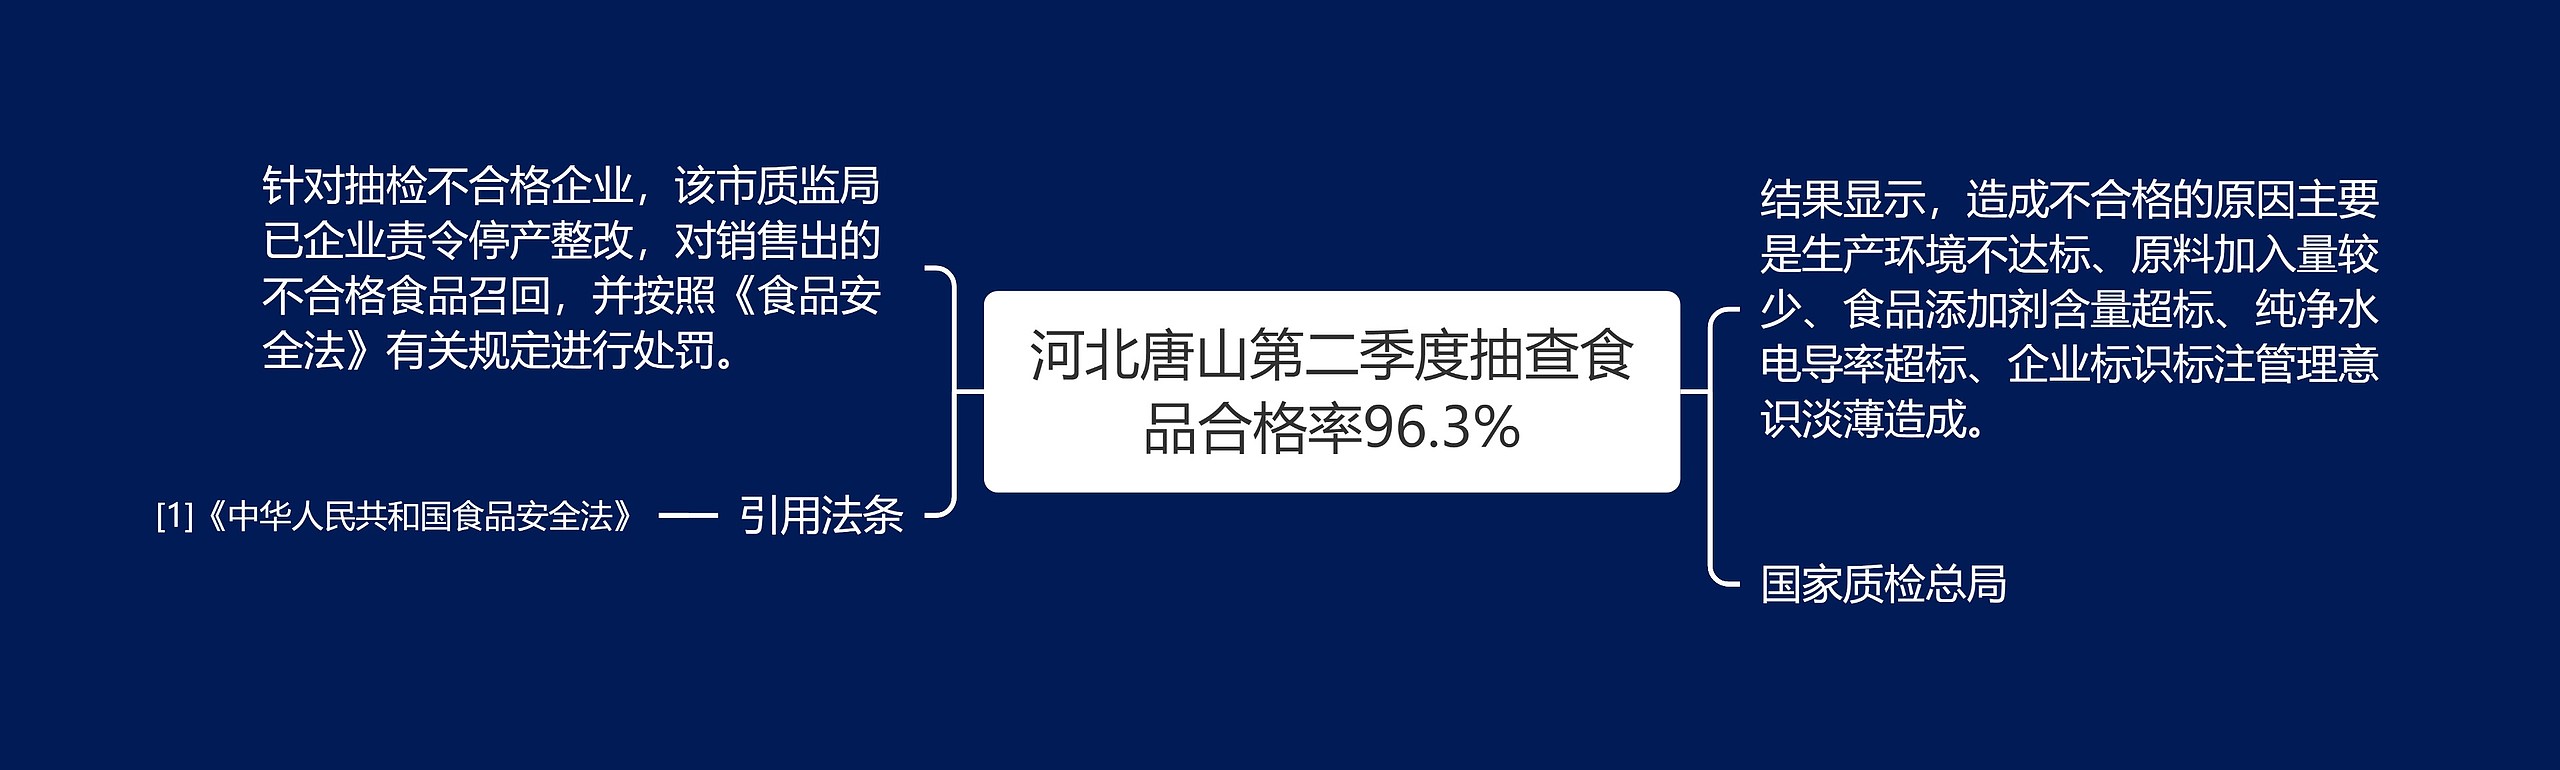 河北唐山第二季度抽查食品合格率96.3%思维导图